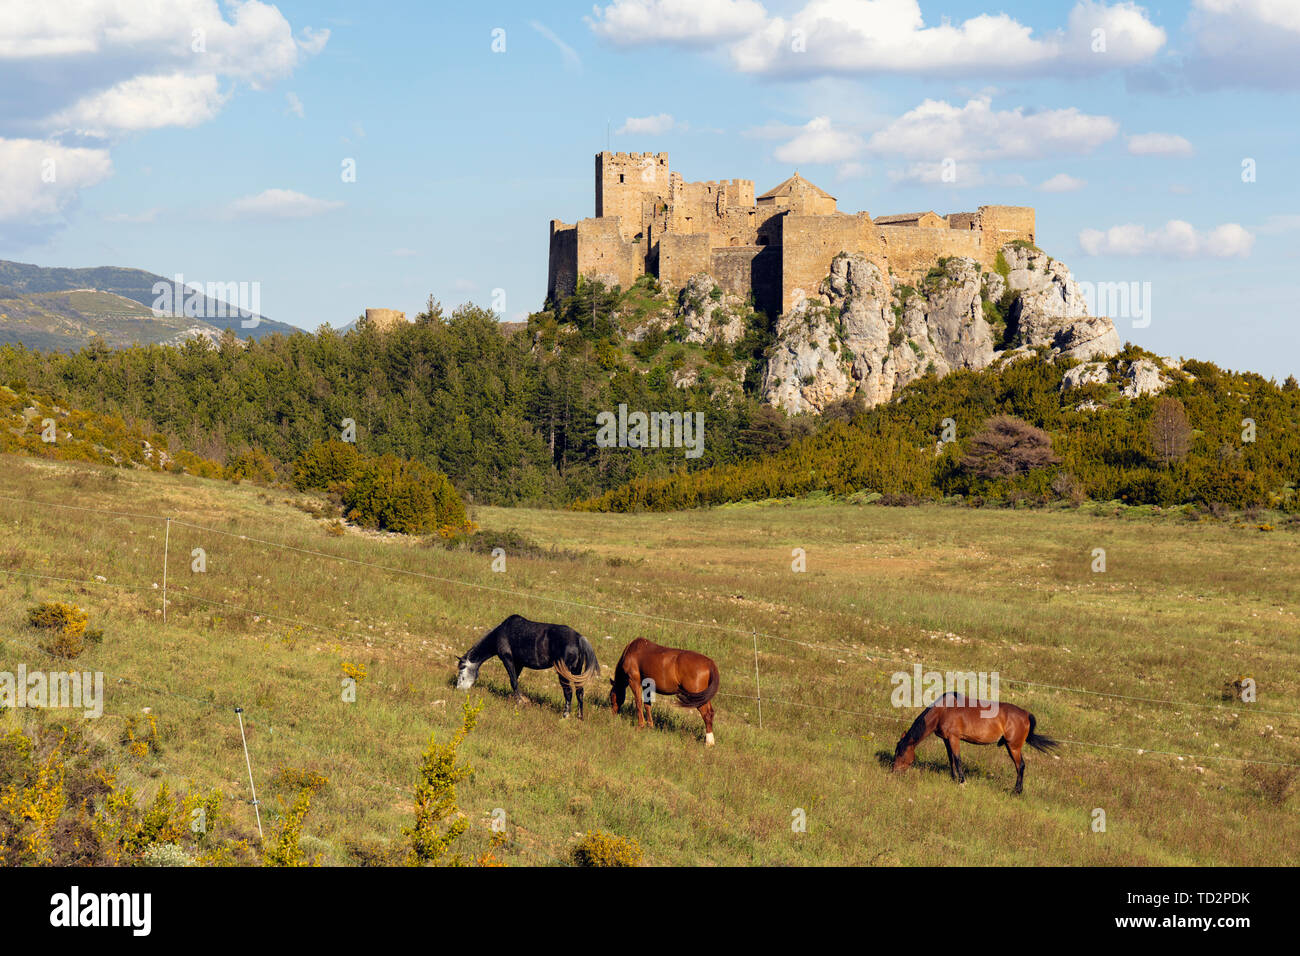 Les chevaux dans le champ en face du Château de Loarre, près de Loarre, la Province d'Huesca, Aragon, Espagne. Le château roman est parmi les plus anciennes de l'Espagne, datant mostl Banque D'Images